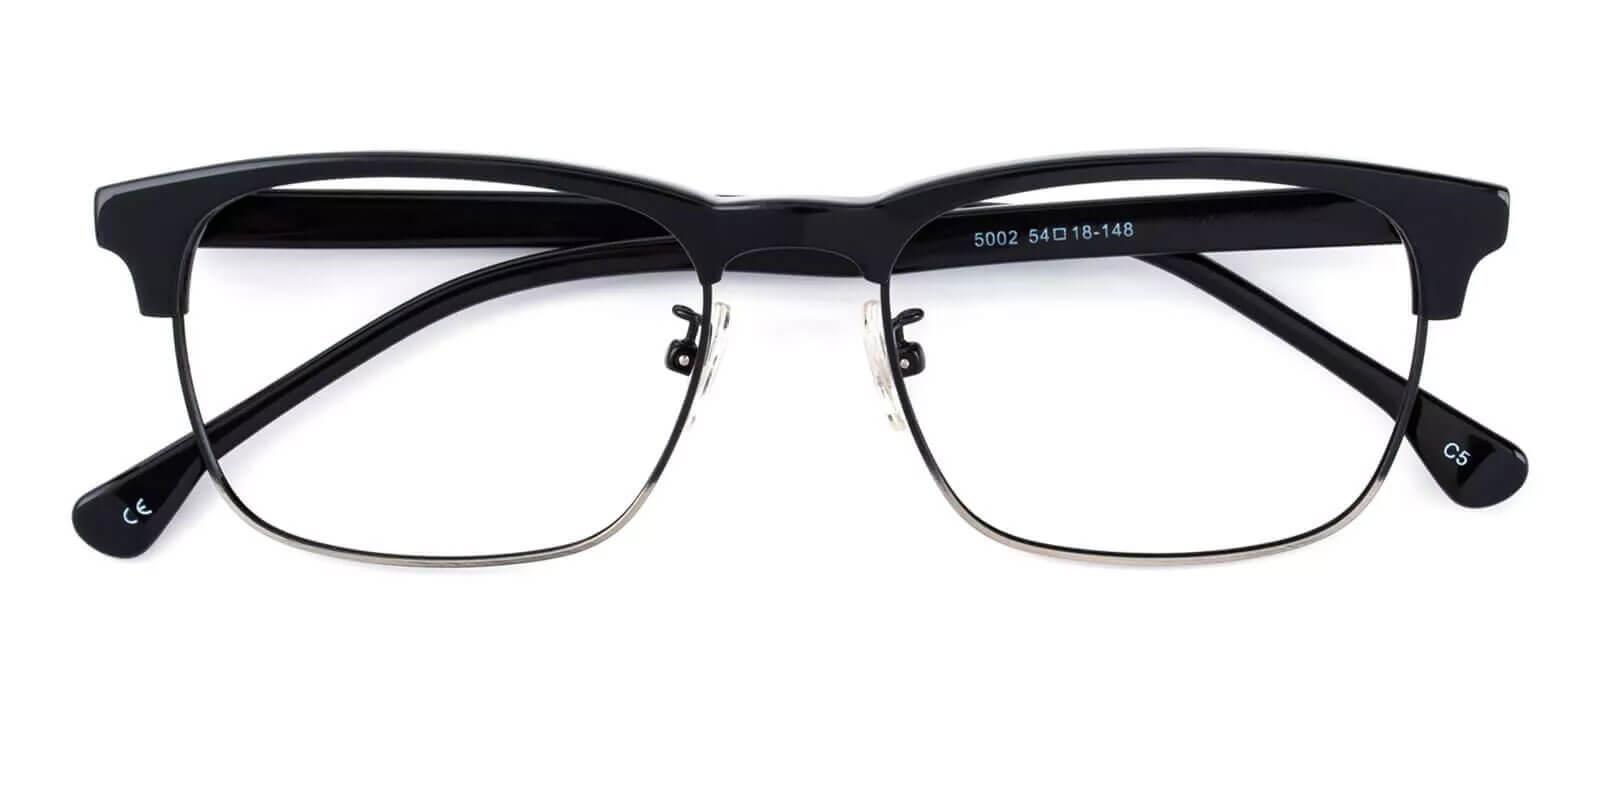 Joseph Black Combination Eyeglasses , NosePads Frames from ABBE Glasses